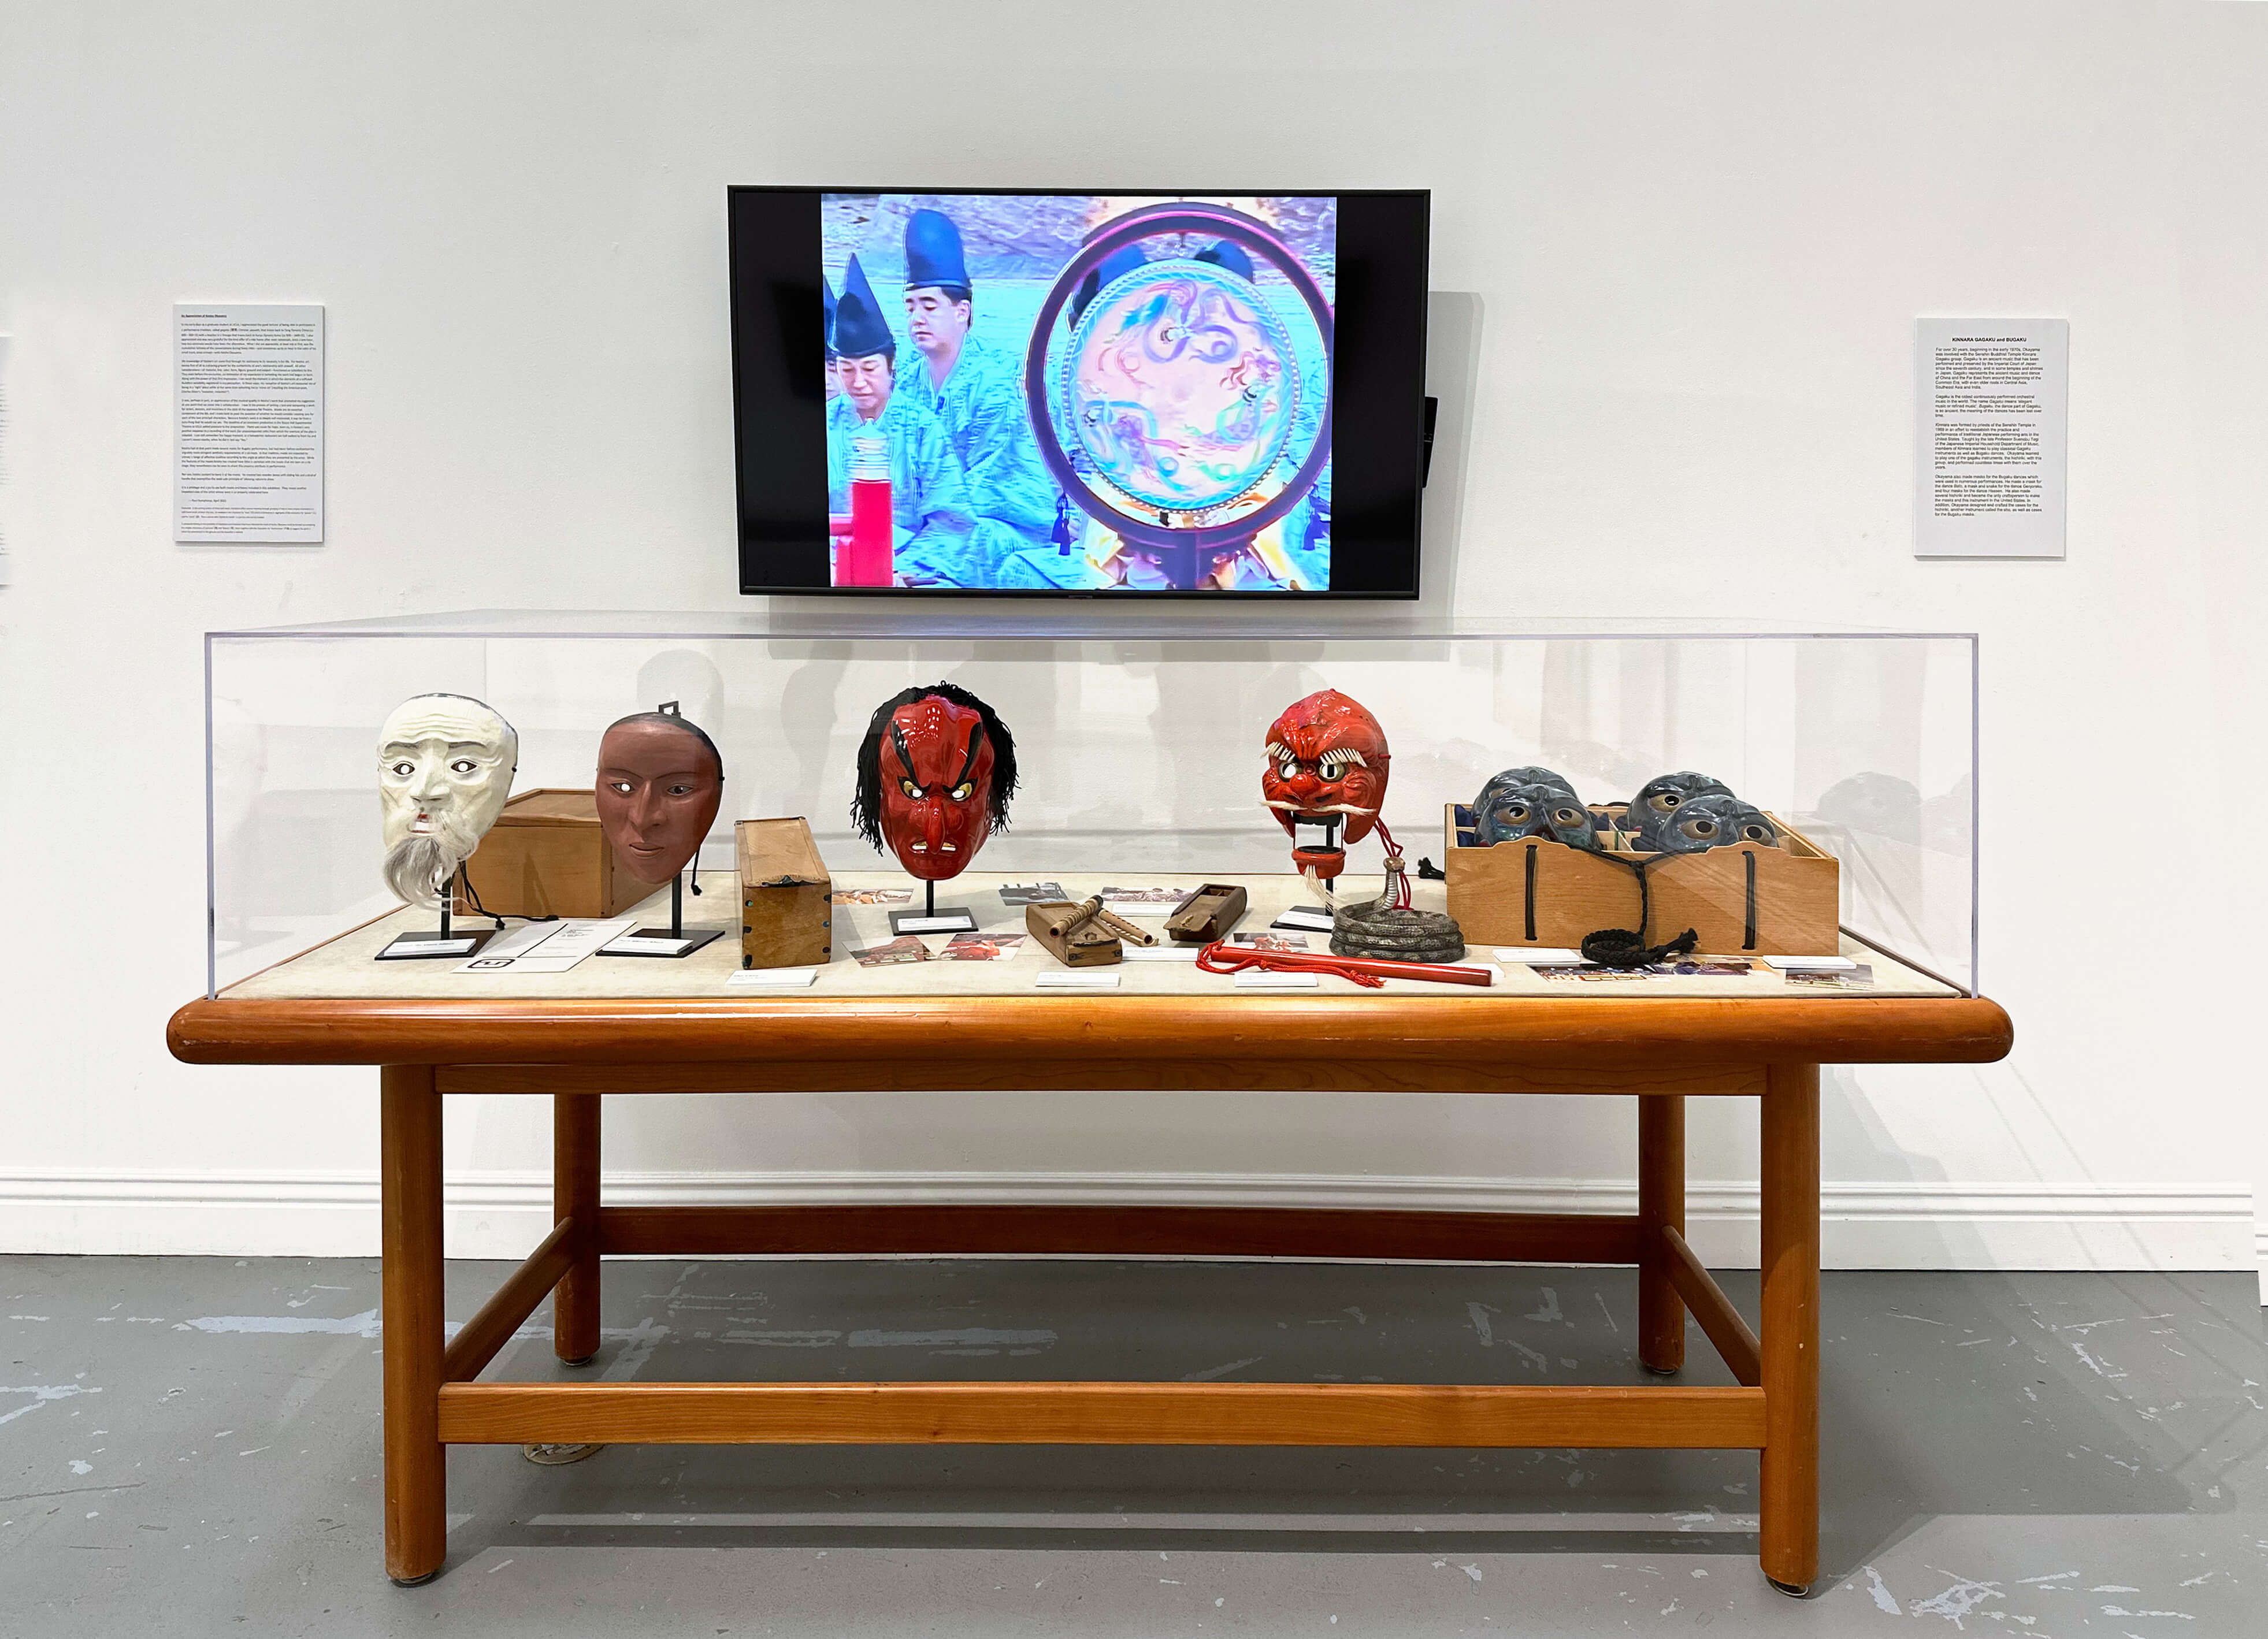 Installation view, Keisho Okayama: Selected Works - Bugaku and Noh Masks, Gagaku instruments and boxes, 1980s. Above, a video of a Kinnara Bugaku performance featuring Okayama’s masks.